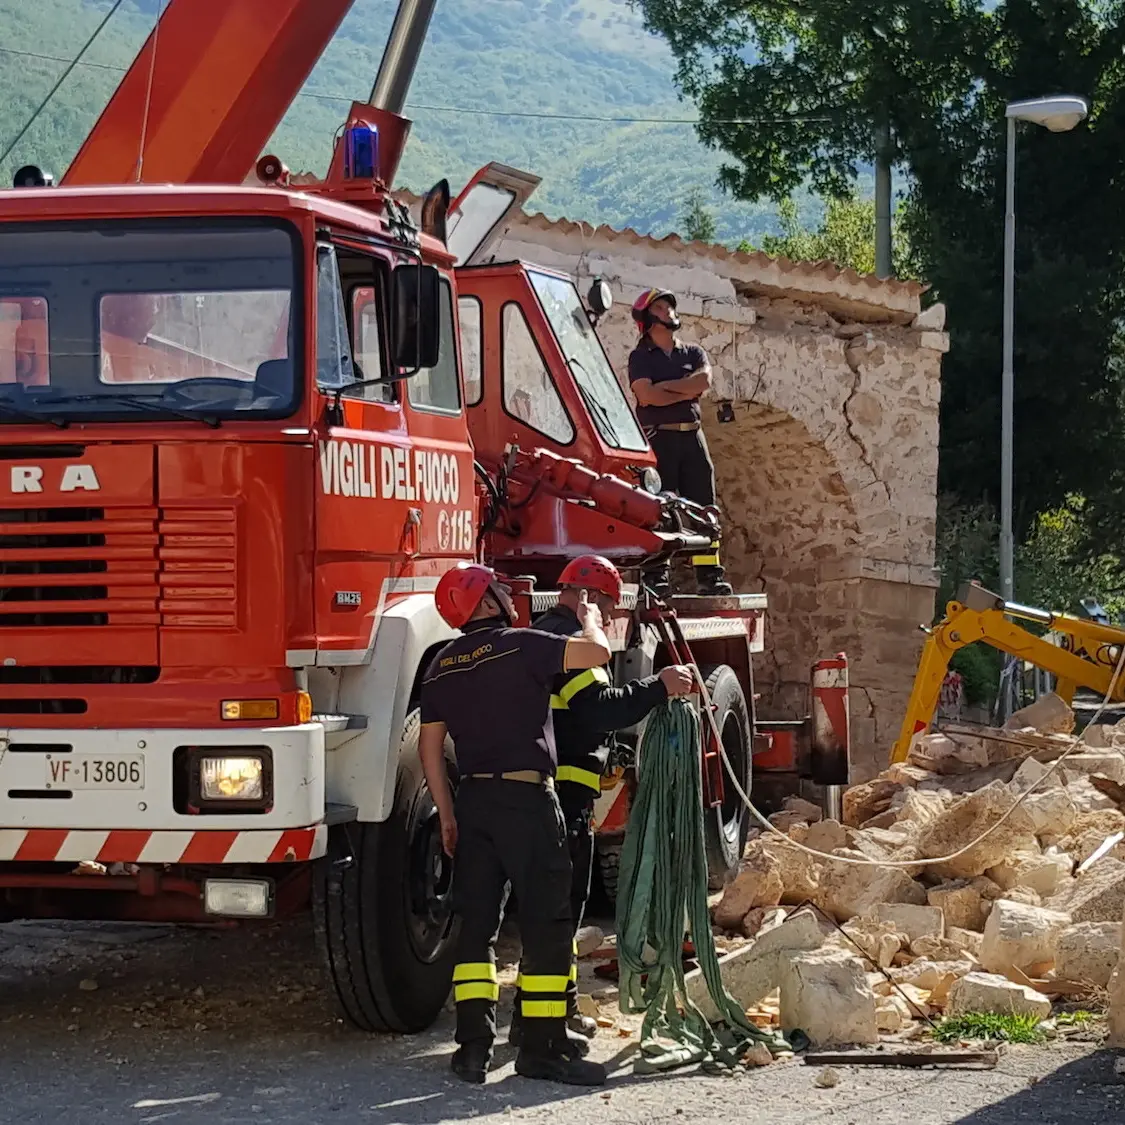 Liguria, 130 vigili del fuoco cercasi